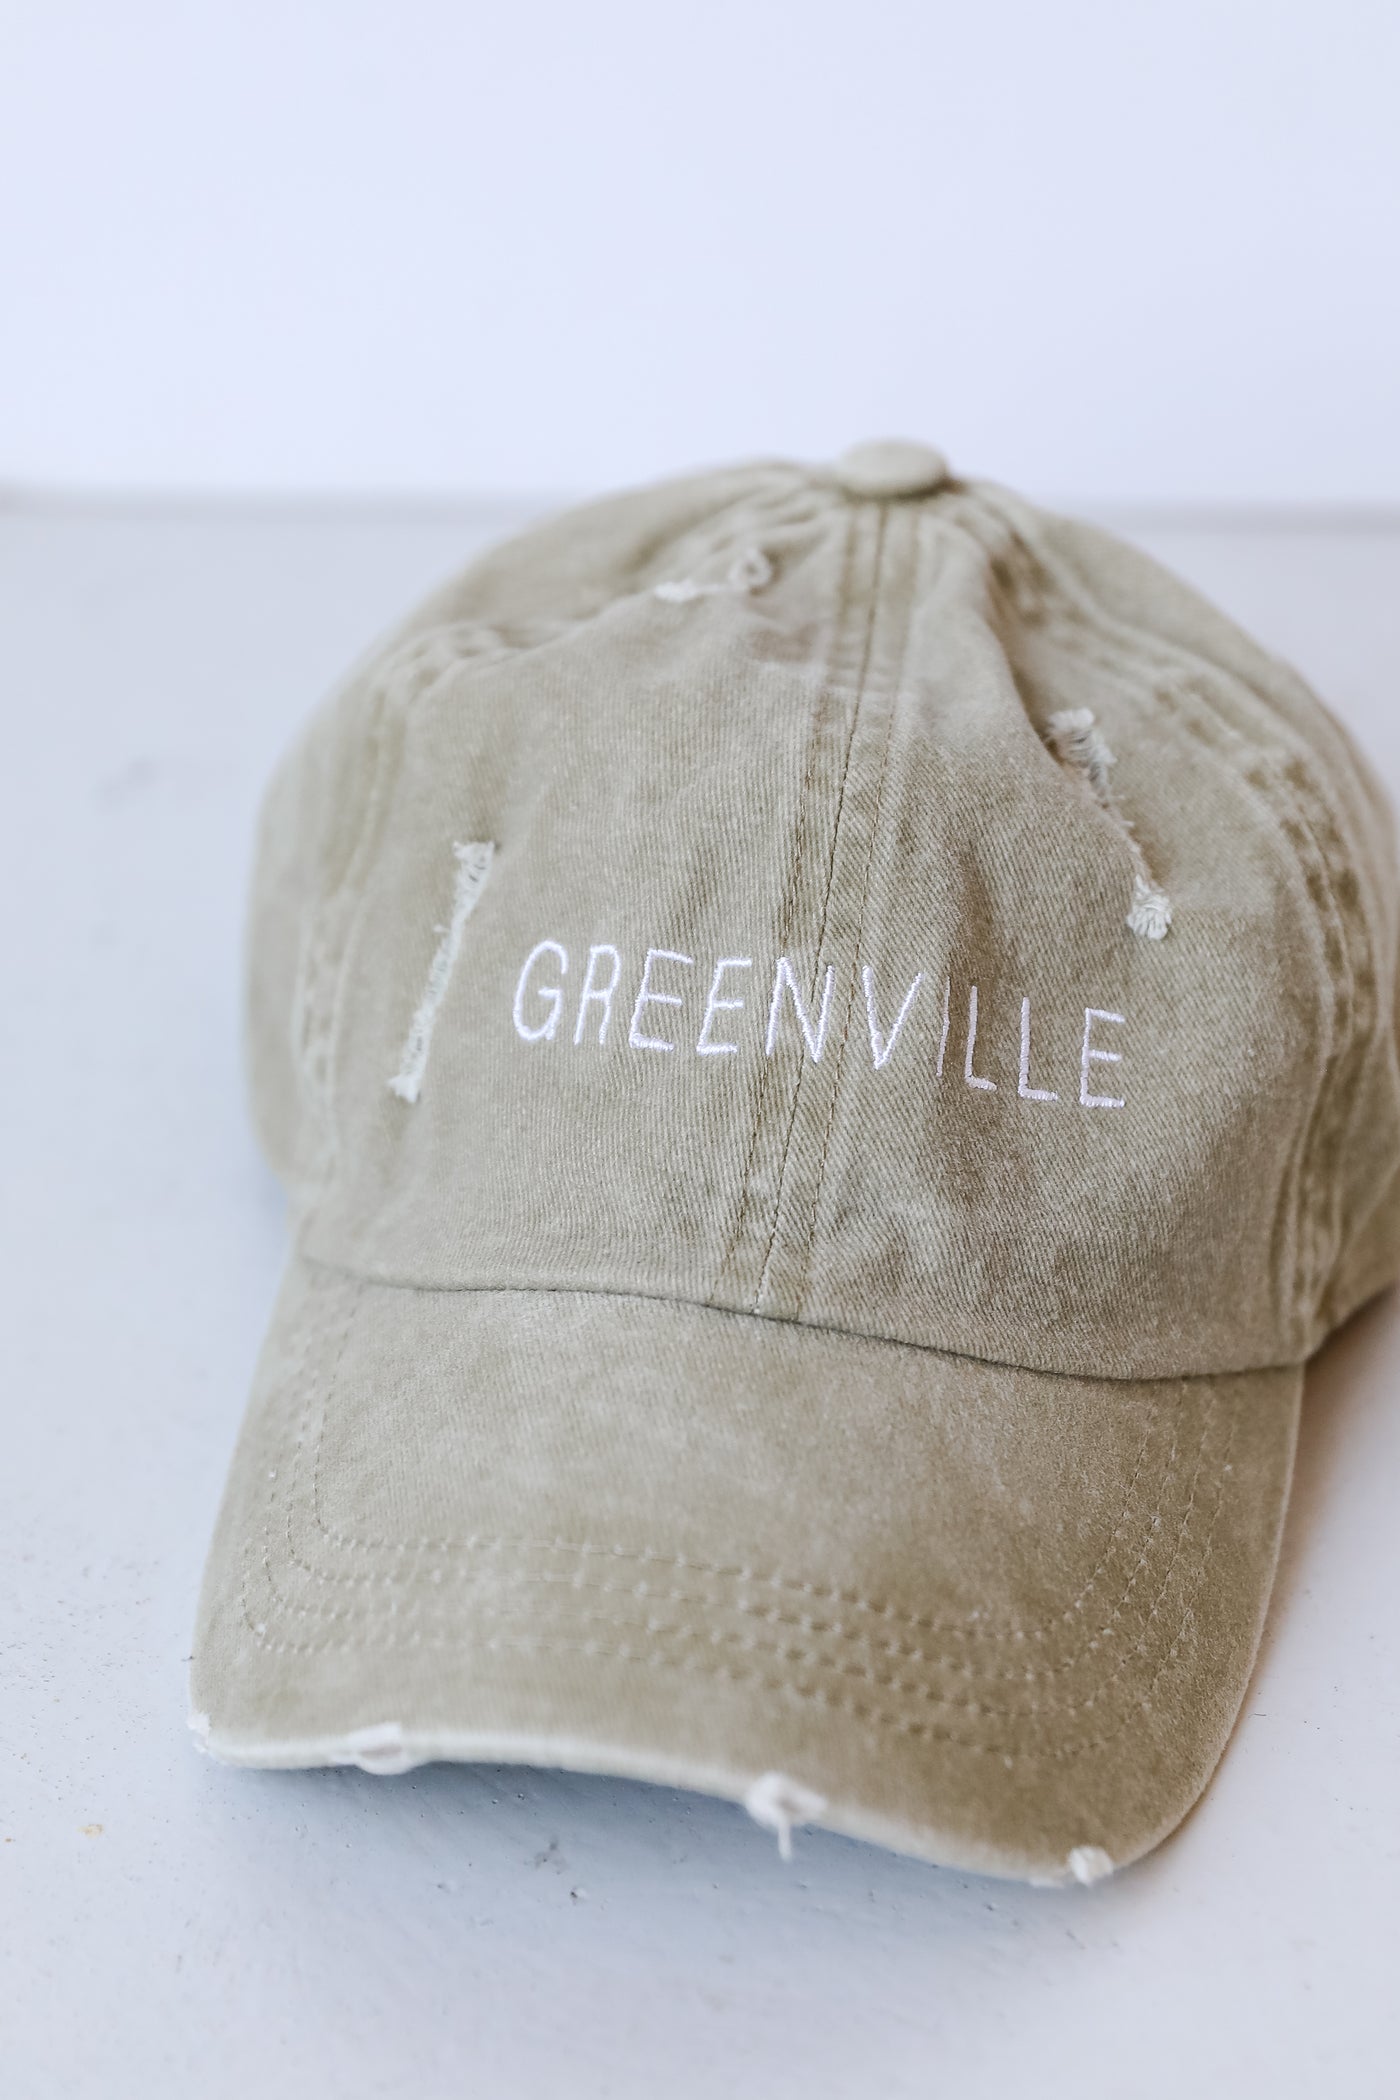 Greenville Vintage Embroidered Hat